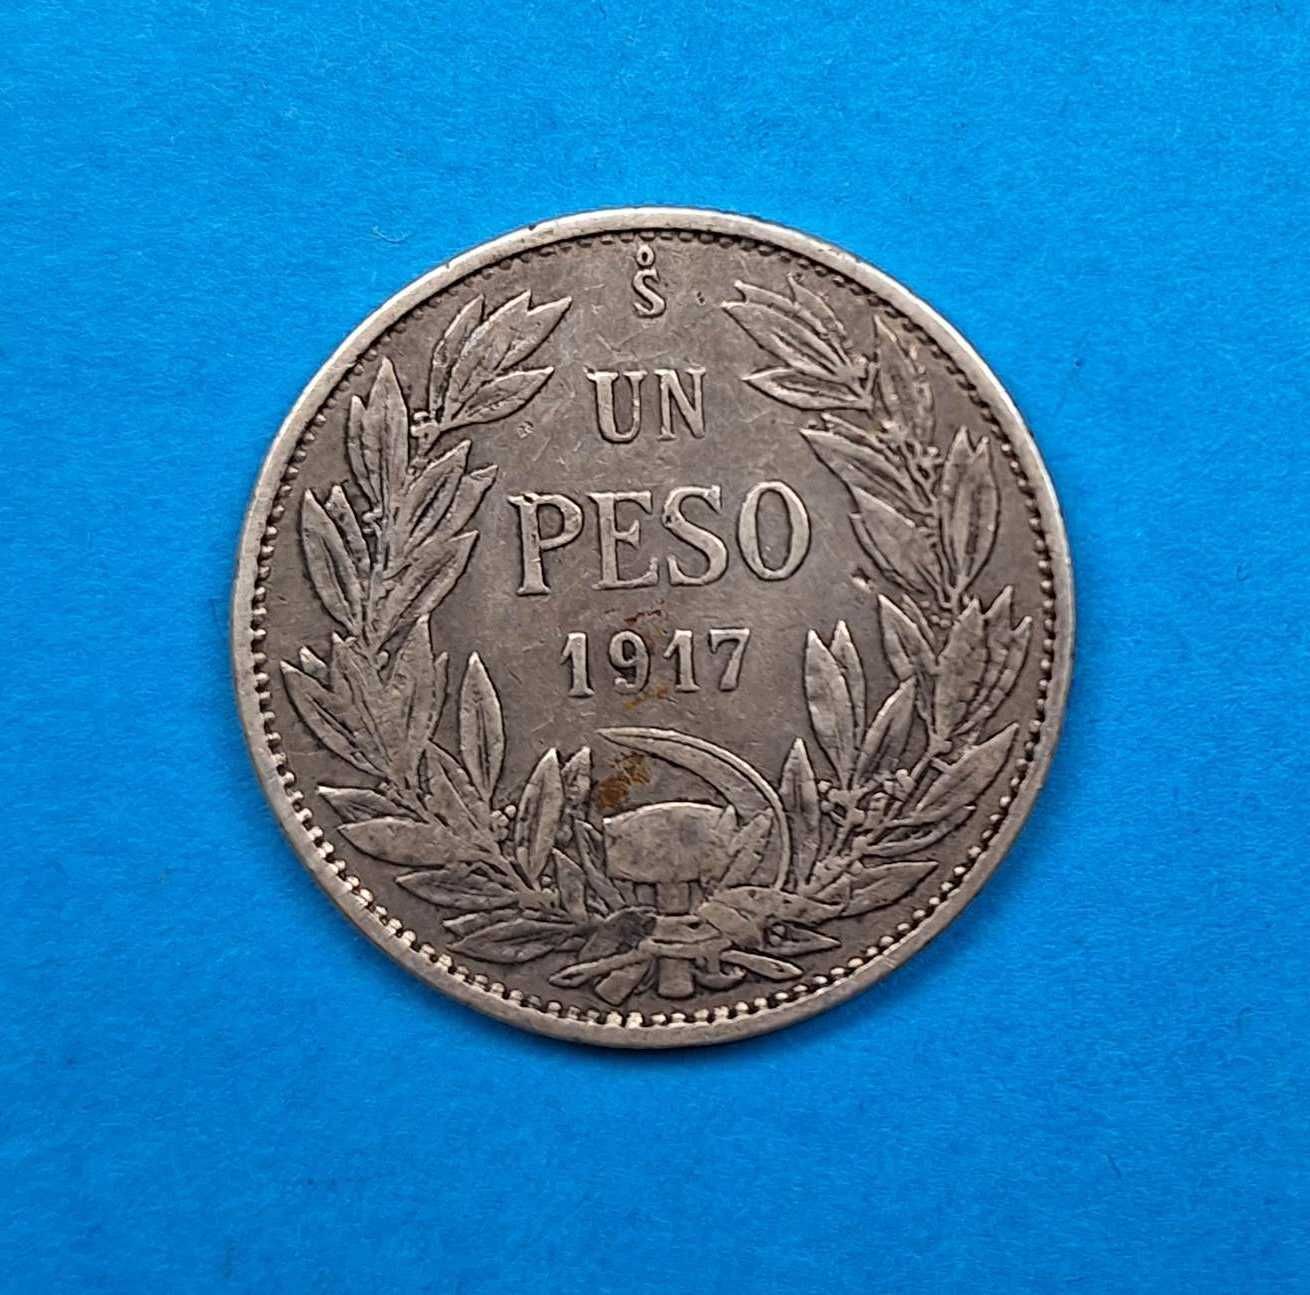 Chile 1 peso rok 1917, bardzo dobry stan, srebro 0,720